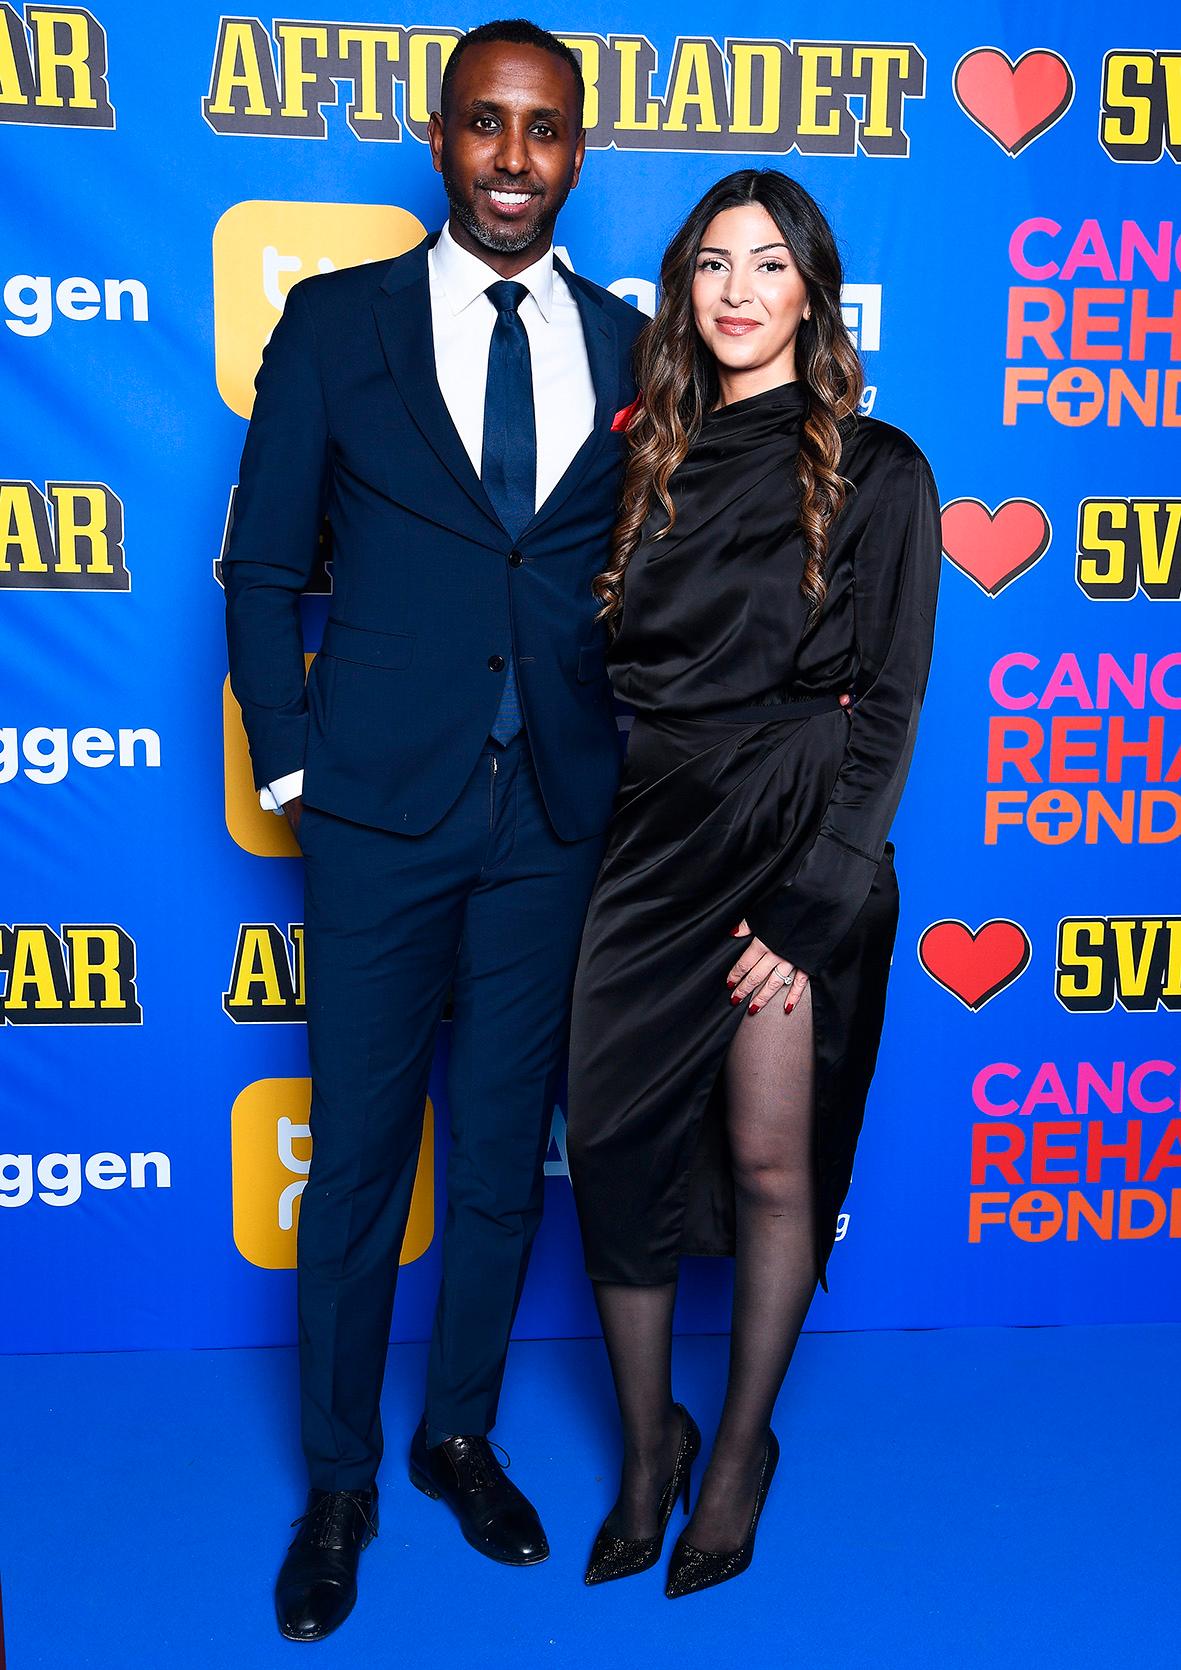 Fotbolsspelaren Henok Goitom på plats med sin fru Nina Ismail.